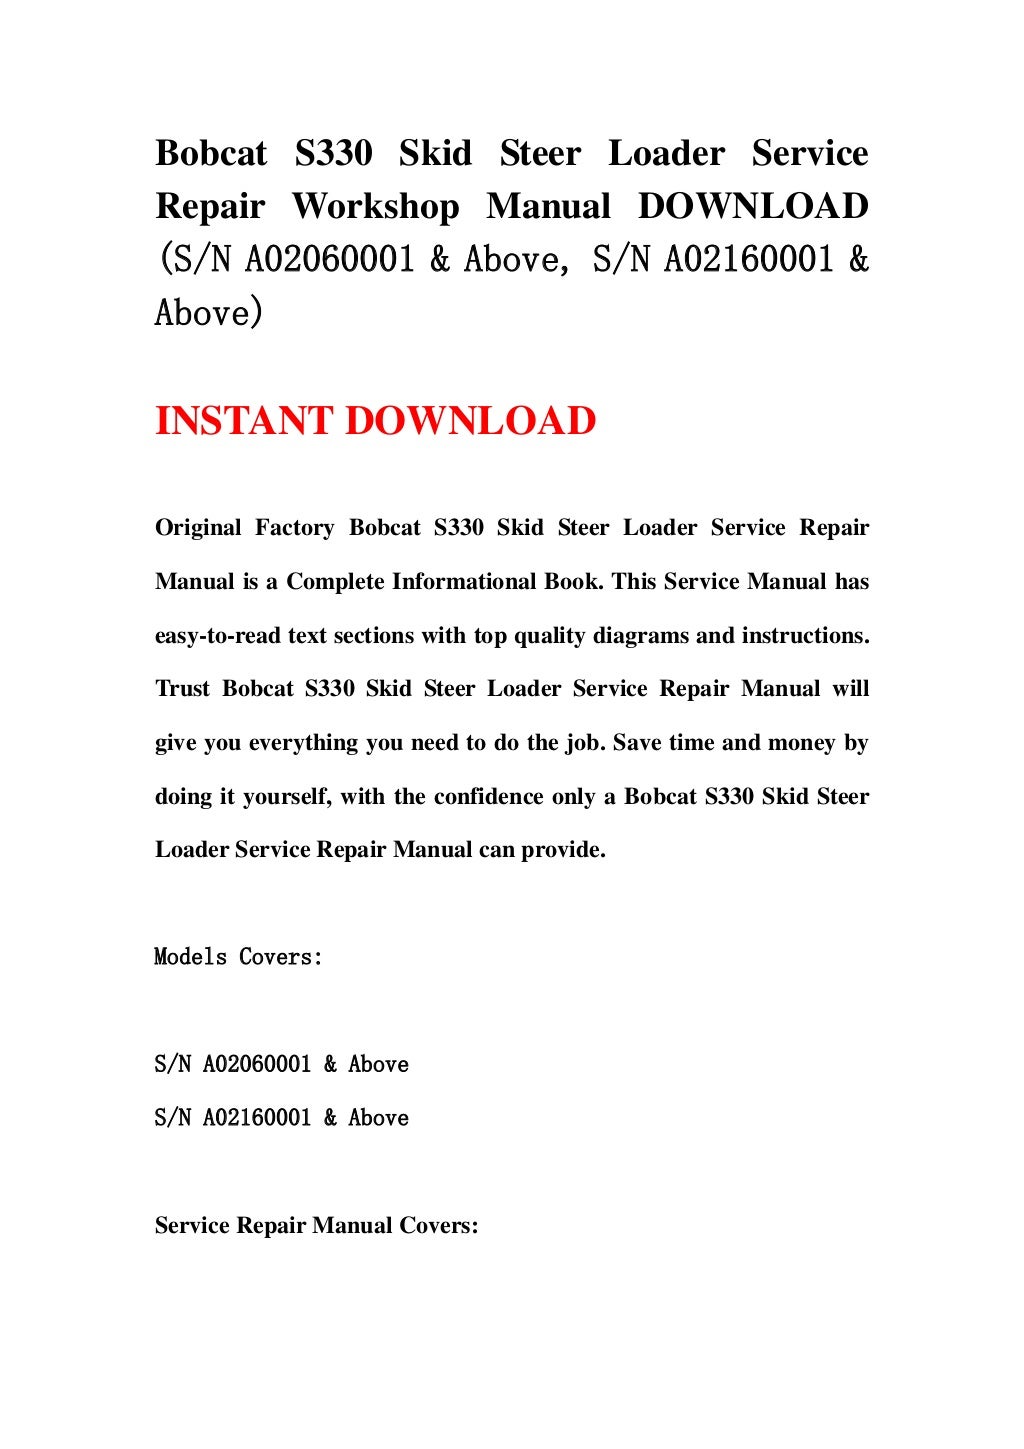 Bobcat s330 skid steer loader service repair workshop manual download…